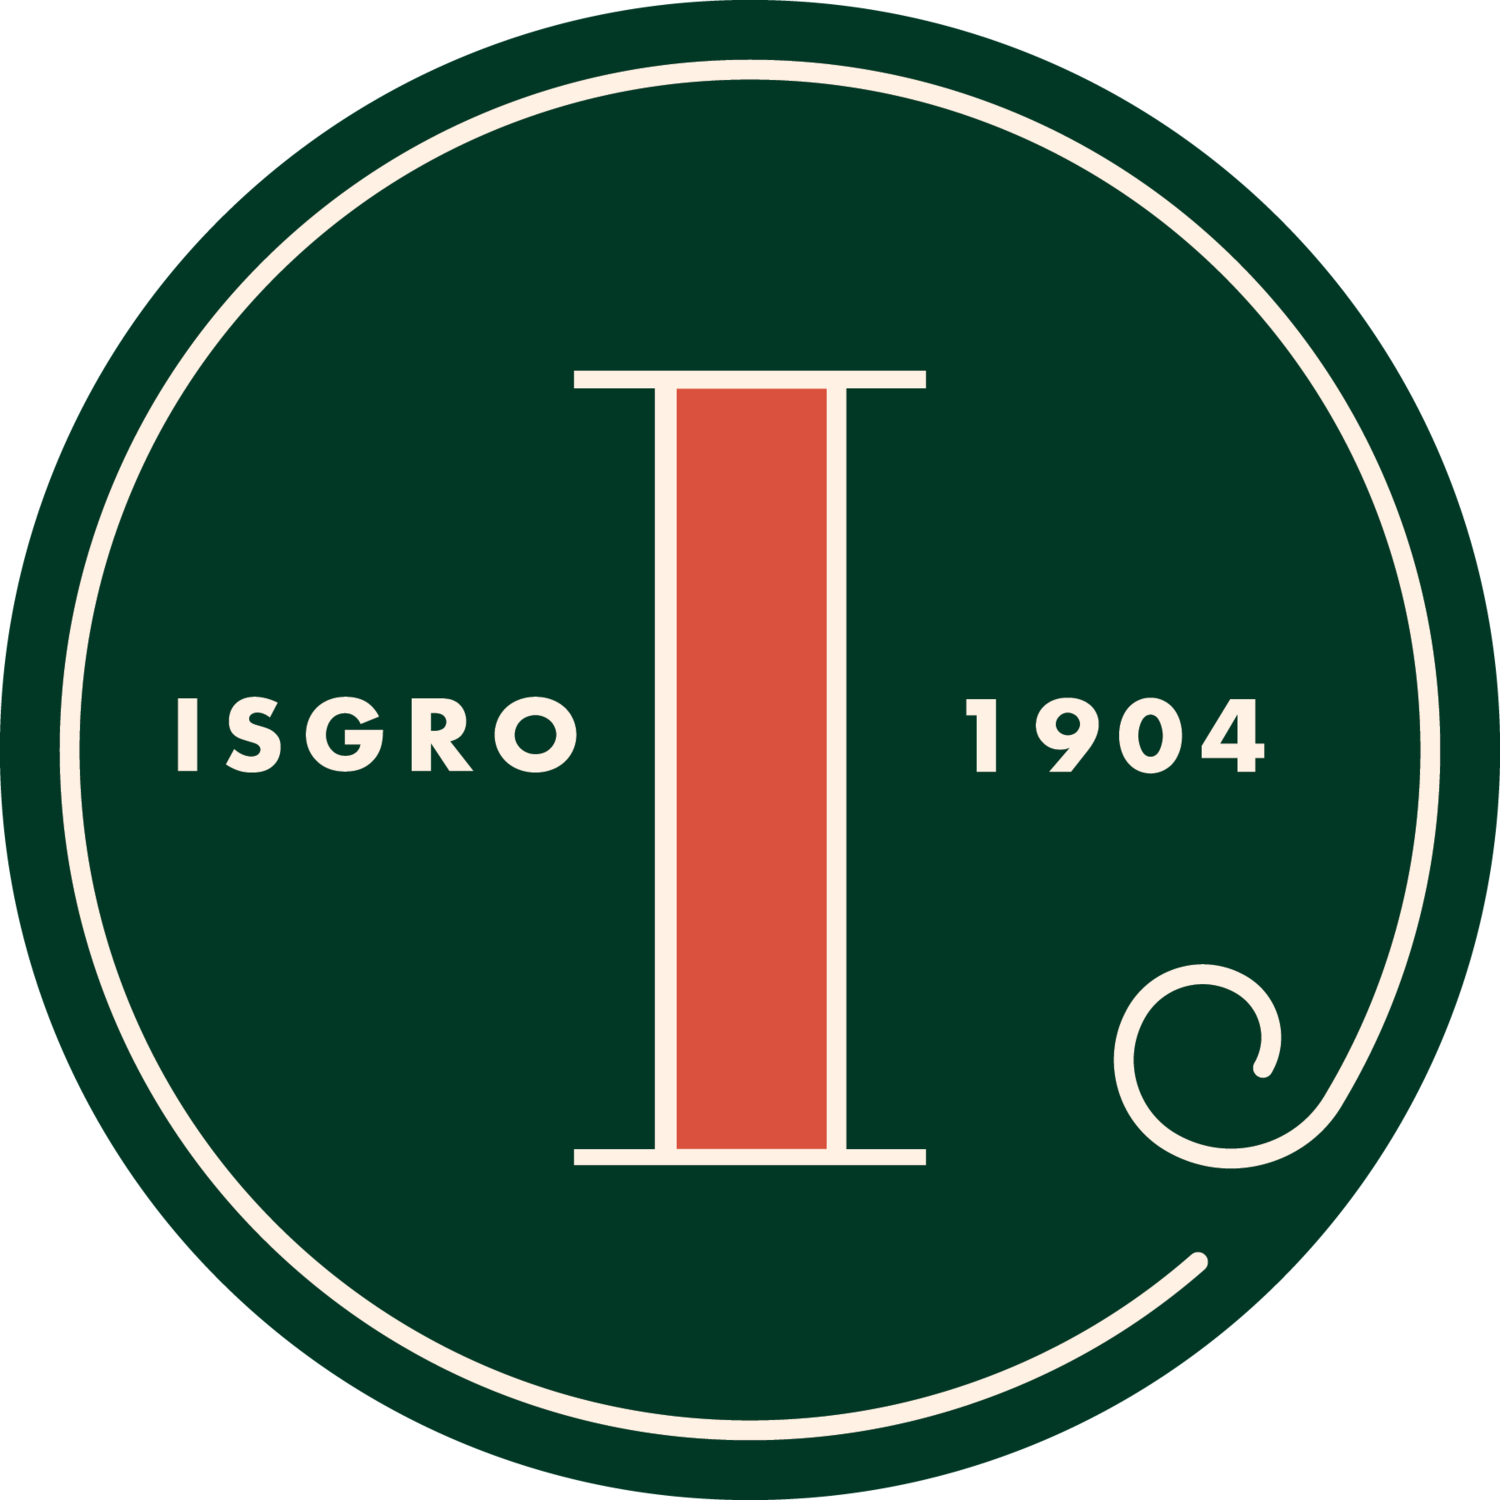 Isgro Pastries